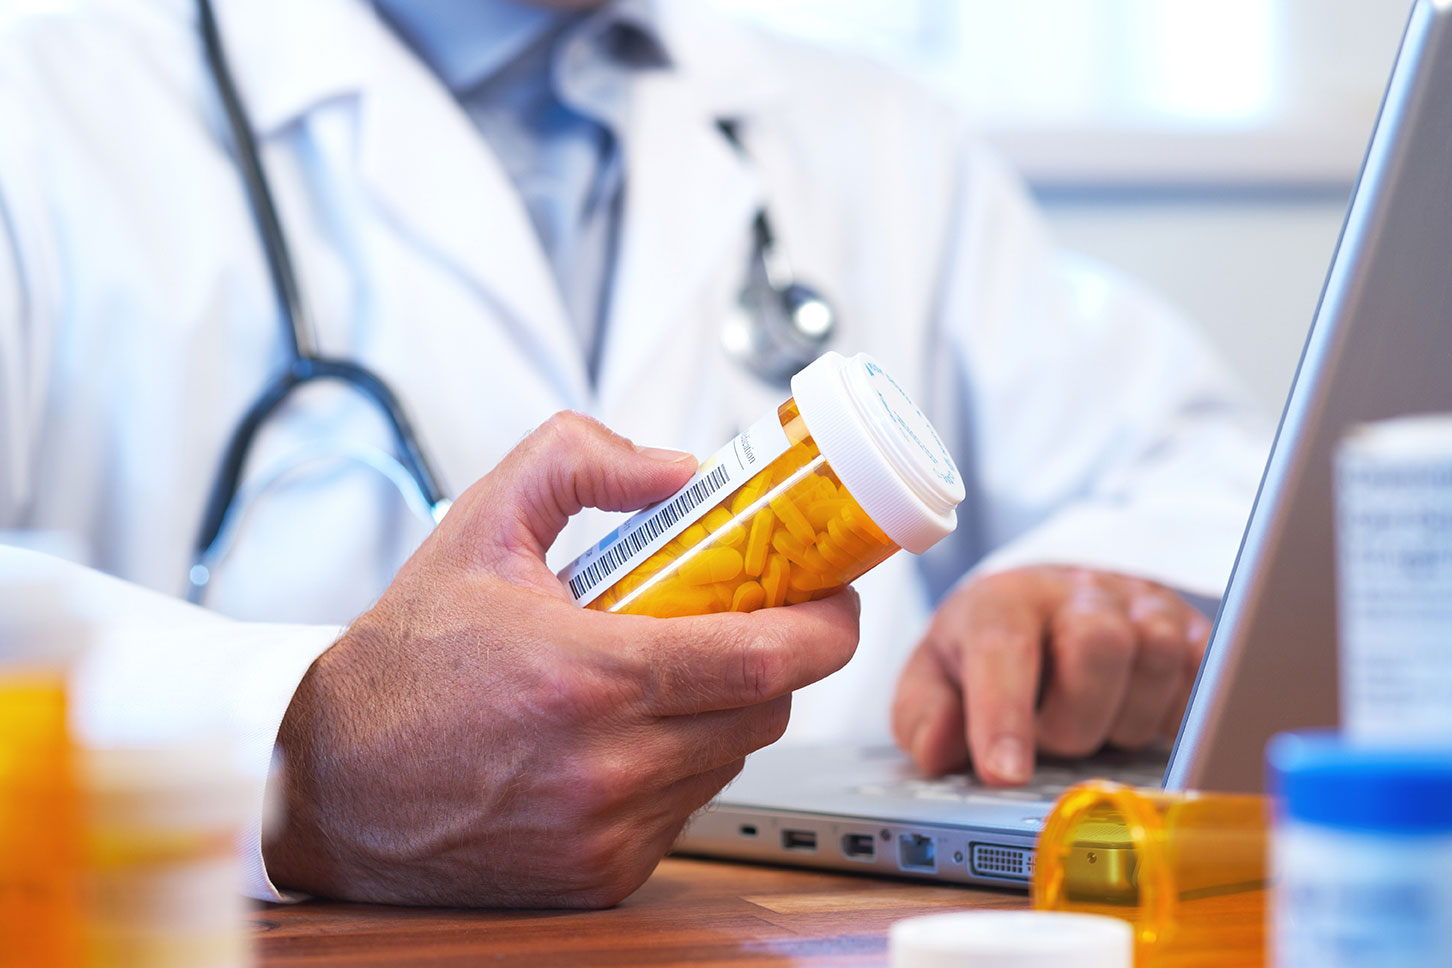 Нехватка препаратов в инфекционке: Кучер обвиняет руководство больницы